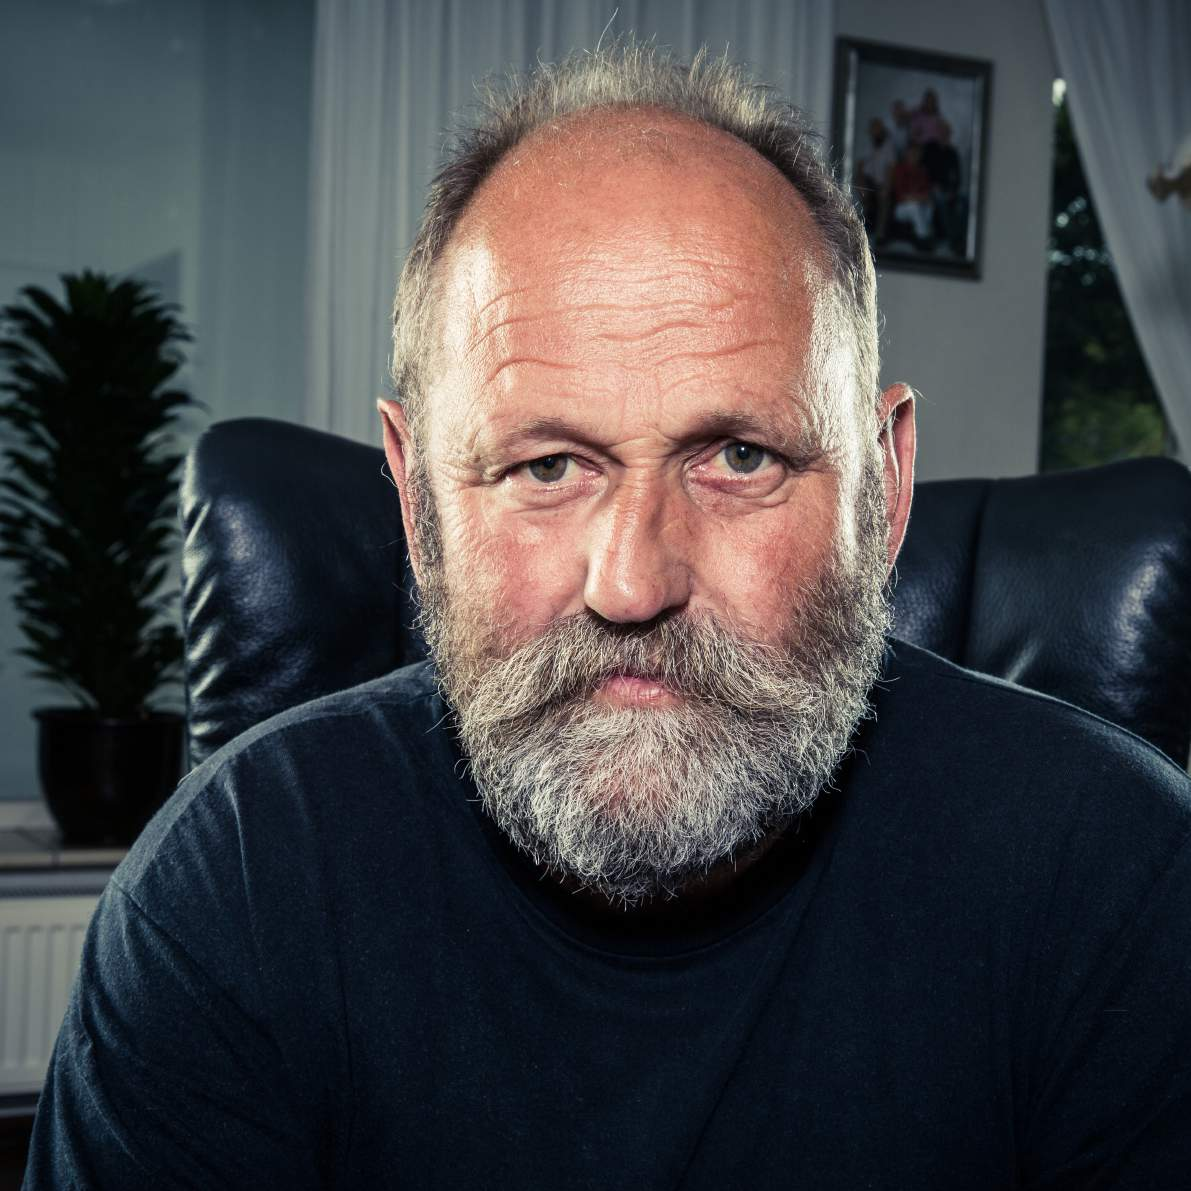 INTERVIEW Henk Wiersma (59) heeft lasserslongen (pulmonale siderose) IK BEN VAAK TE ZIEK OM NAAR MIJN WERK TE GAAN Henk Wiersma heeft pulmonale siderose, ofwel lasserslongen.